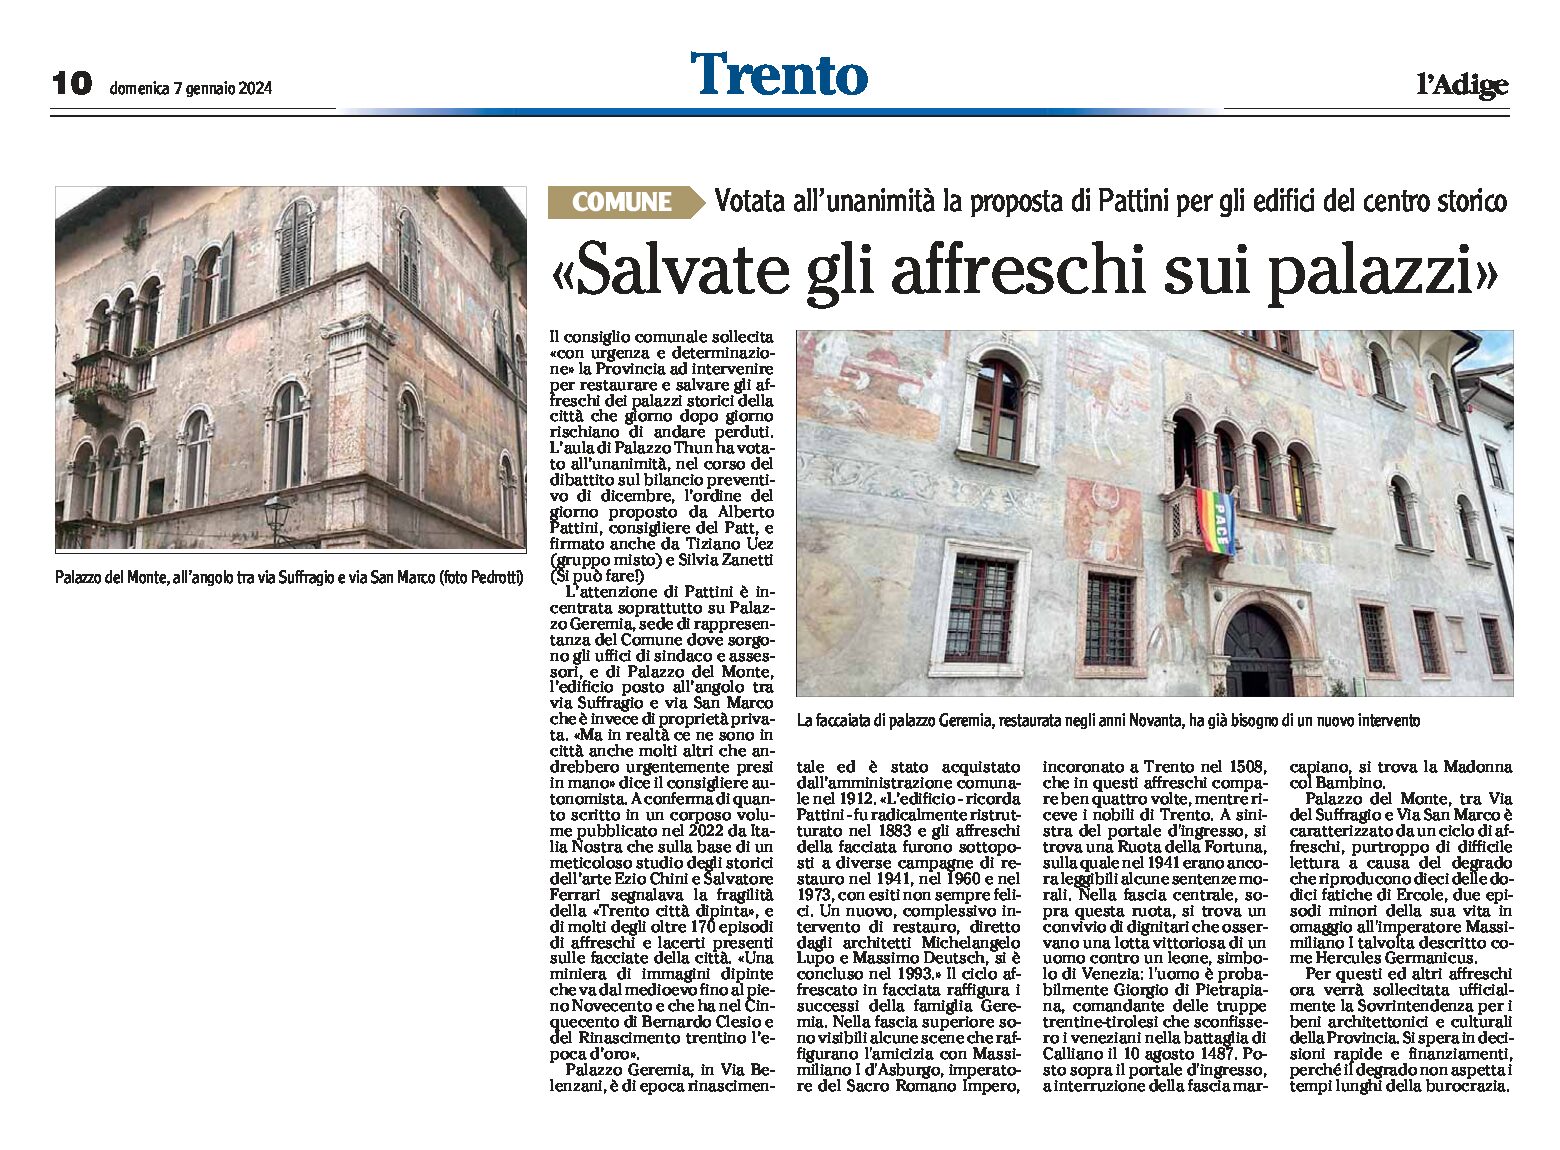 Trento, centro storico: Pattini “salvate gli affreschi sui palazzi”